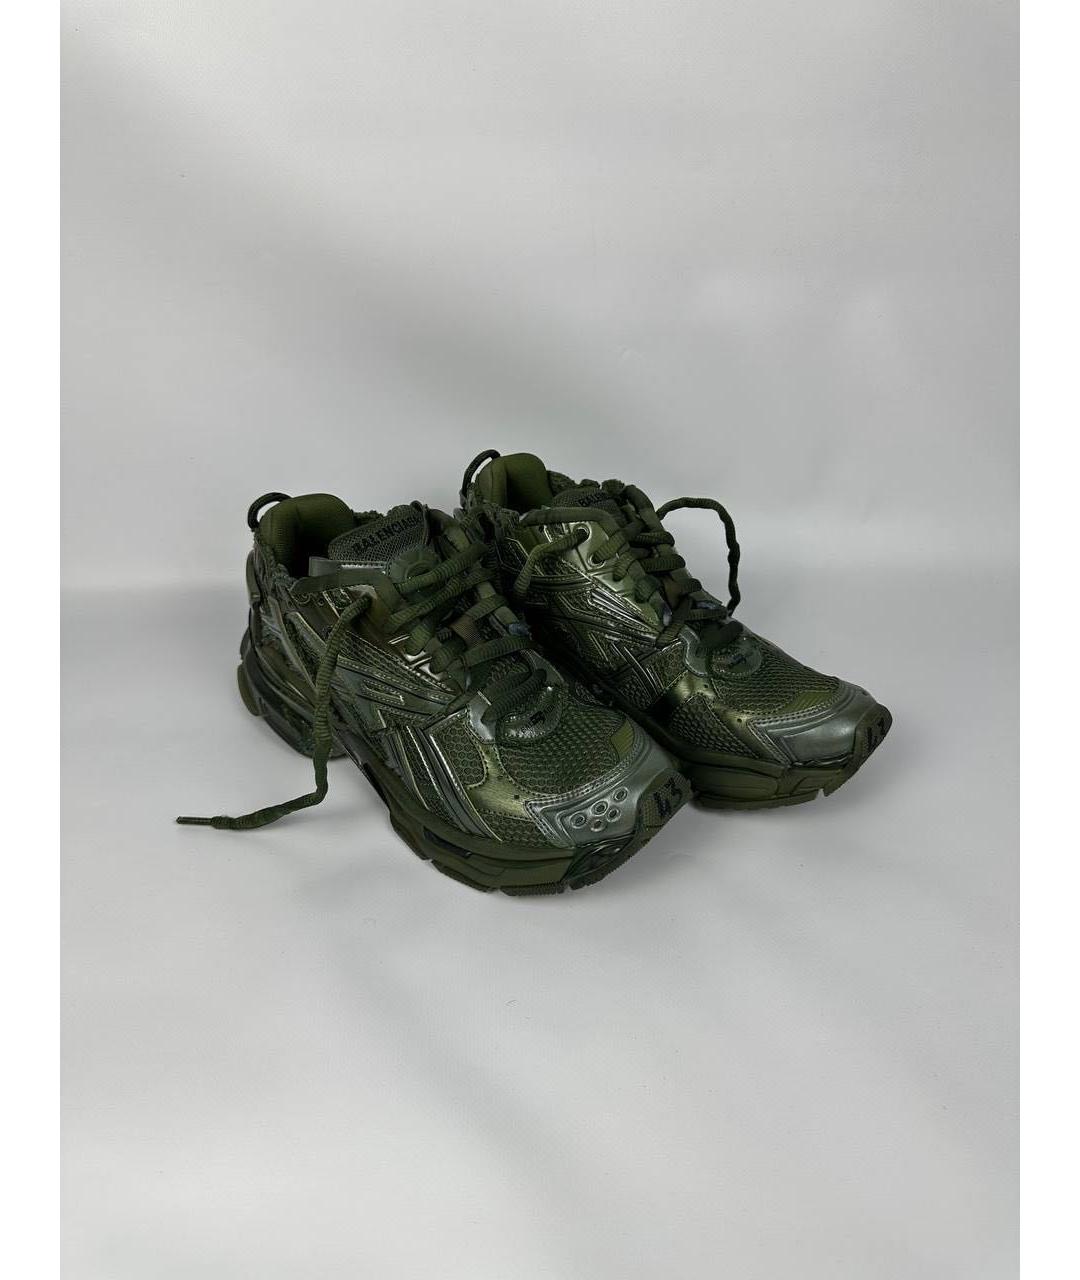 BALENCIAGA Зеленые низкие кроссовки / кеды, фото 2